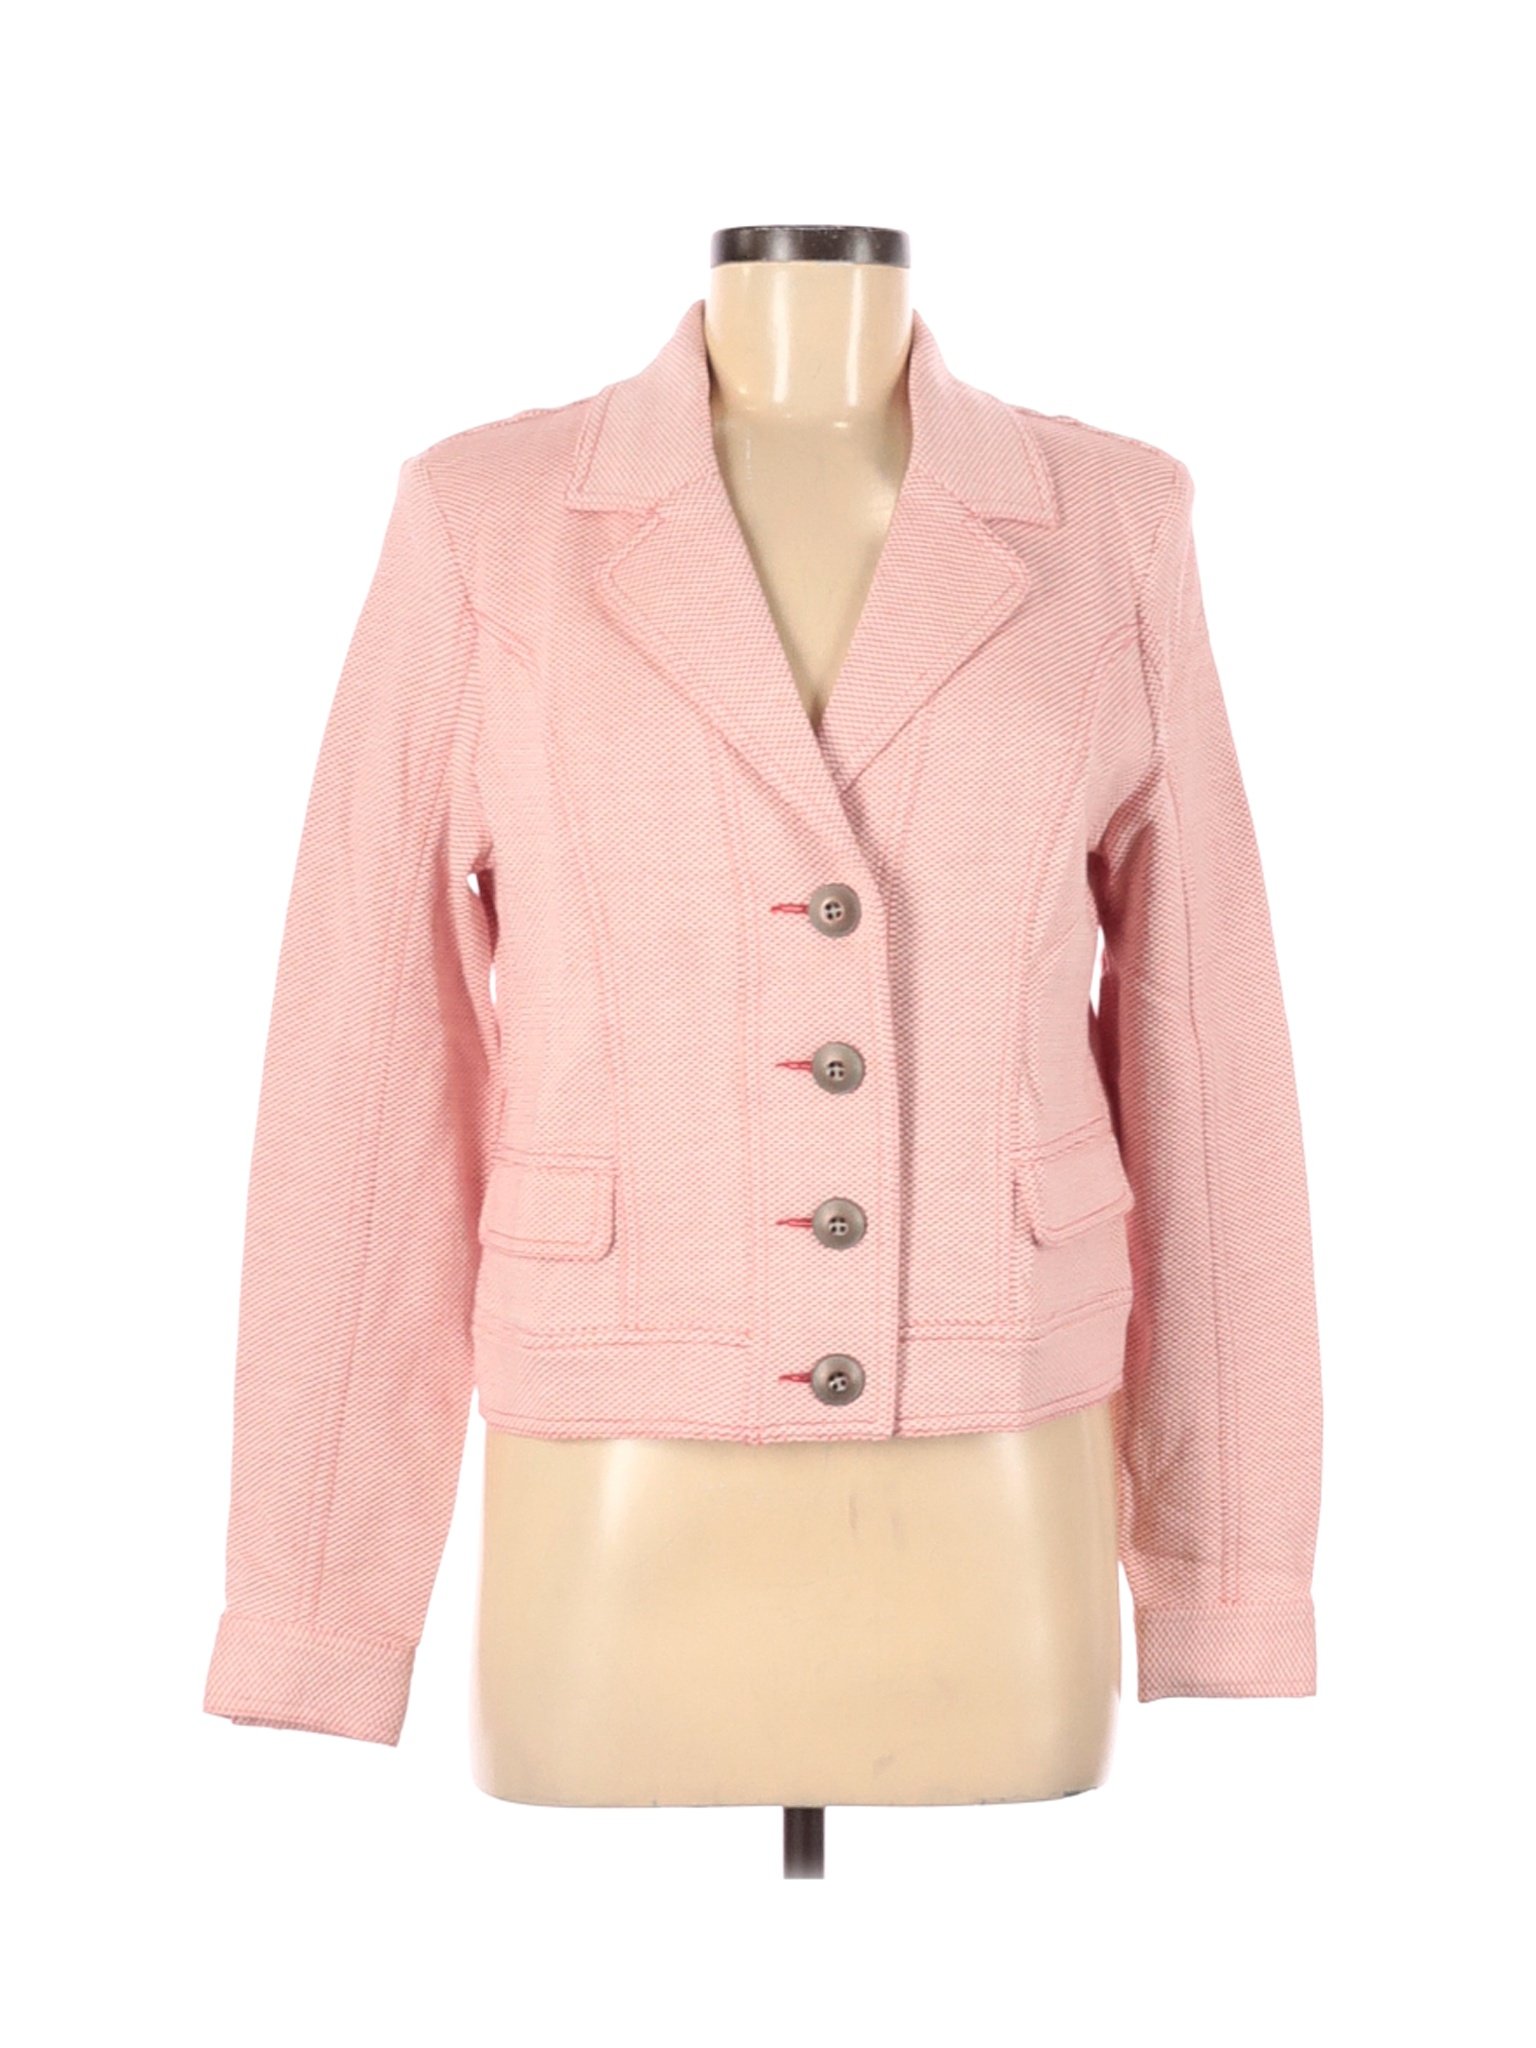 CAbi Women Pink Blazer M | eBay